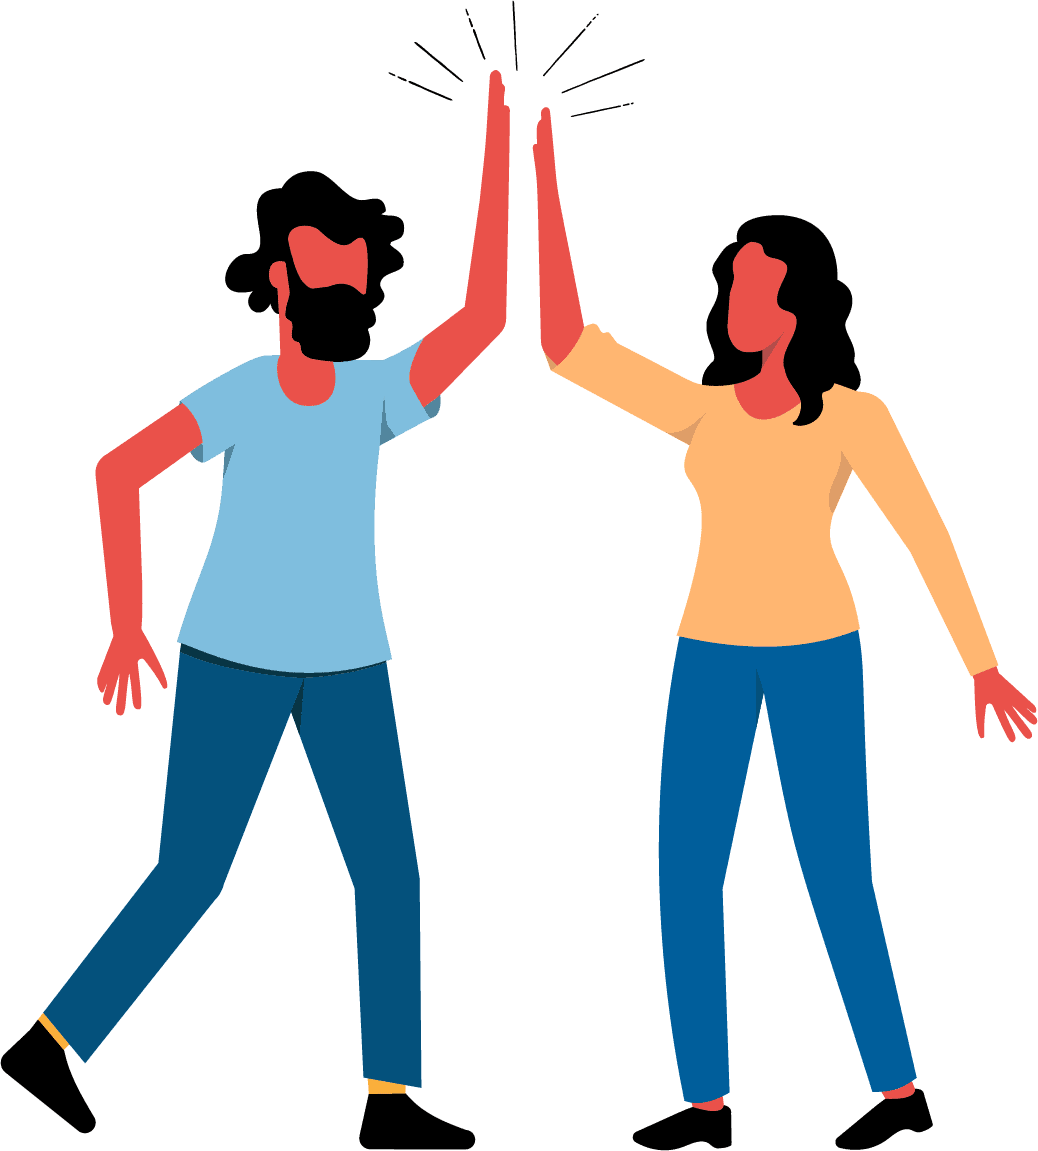 Zwei erwachsene Menschen benutzen die übliche Geste des Feierns oder der Begrüßung, bei der zwei Menschen mit erhobenen Armen auf die offene Handfläche des anderen klatschen.